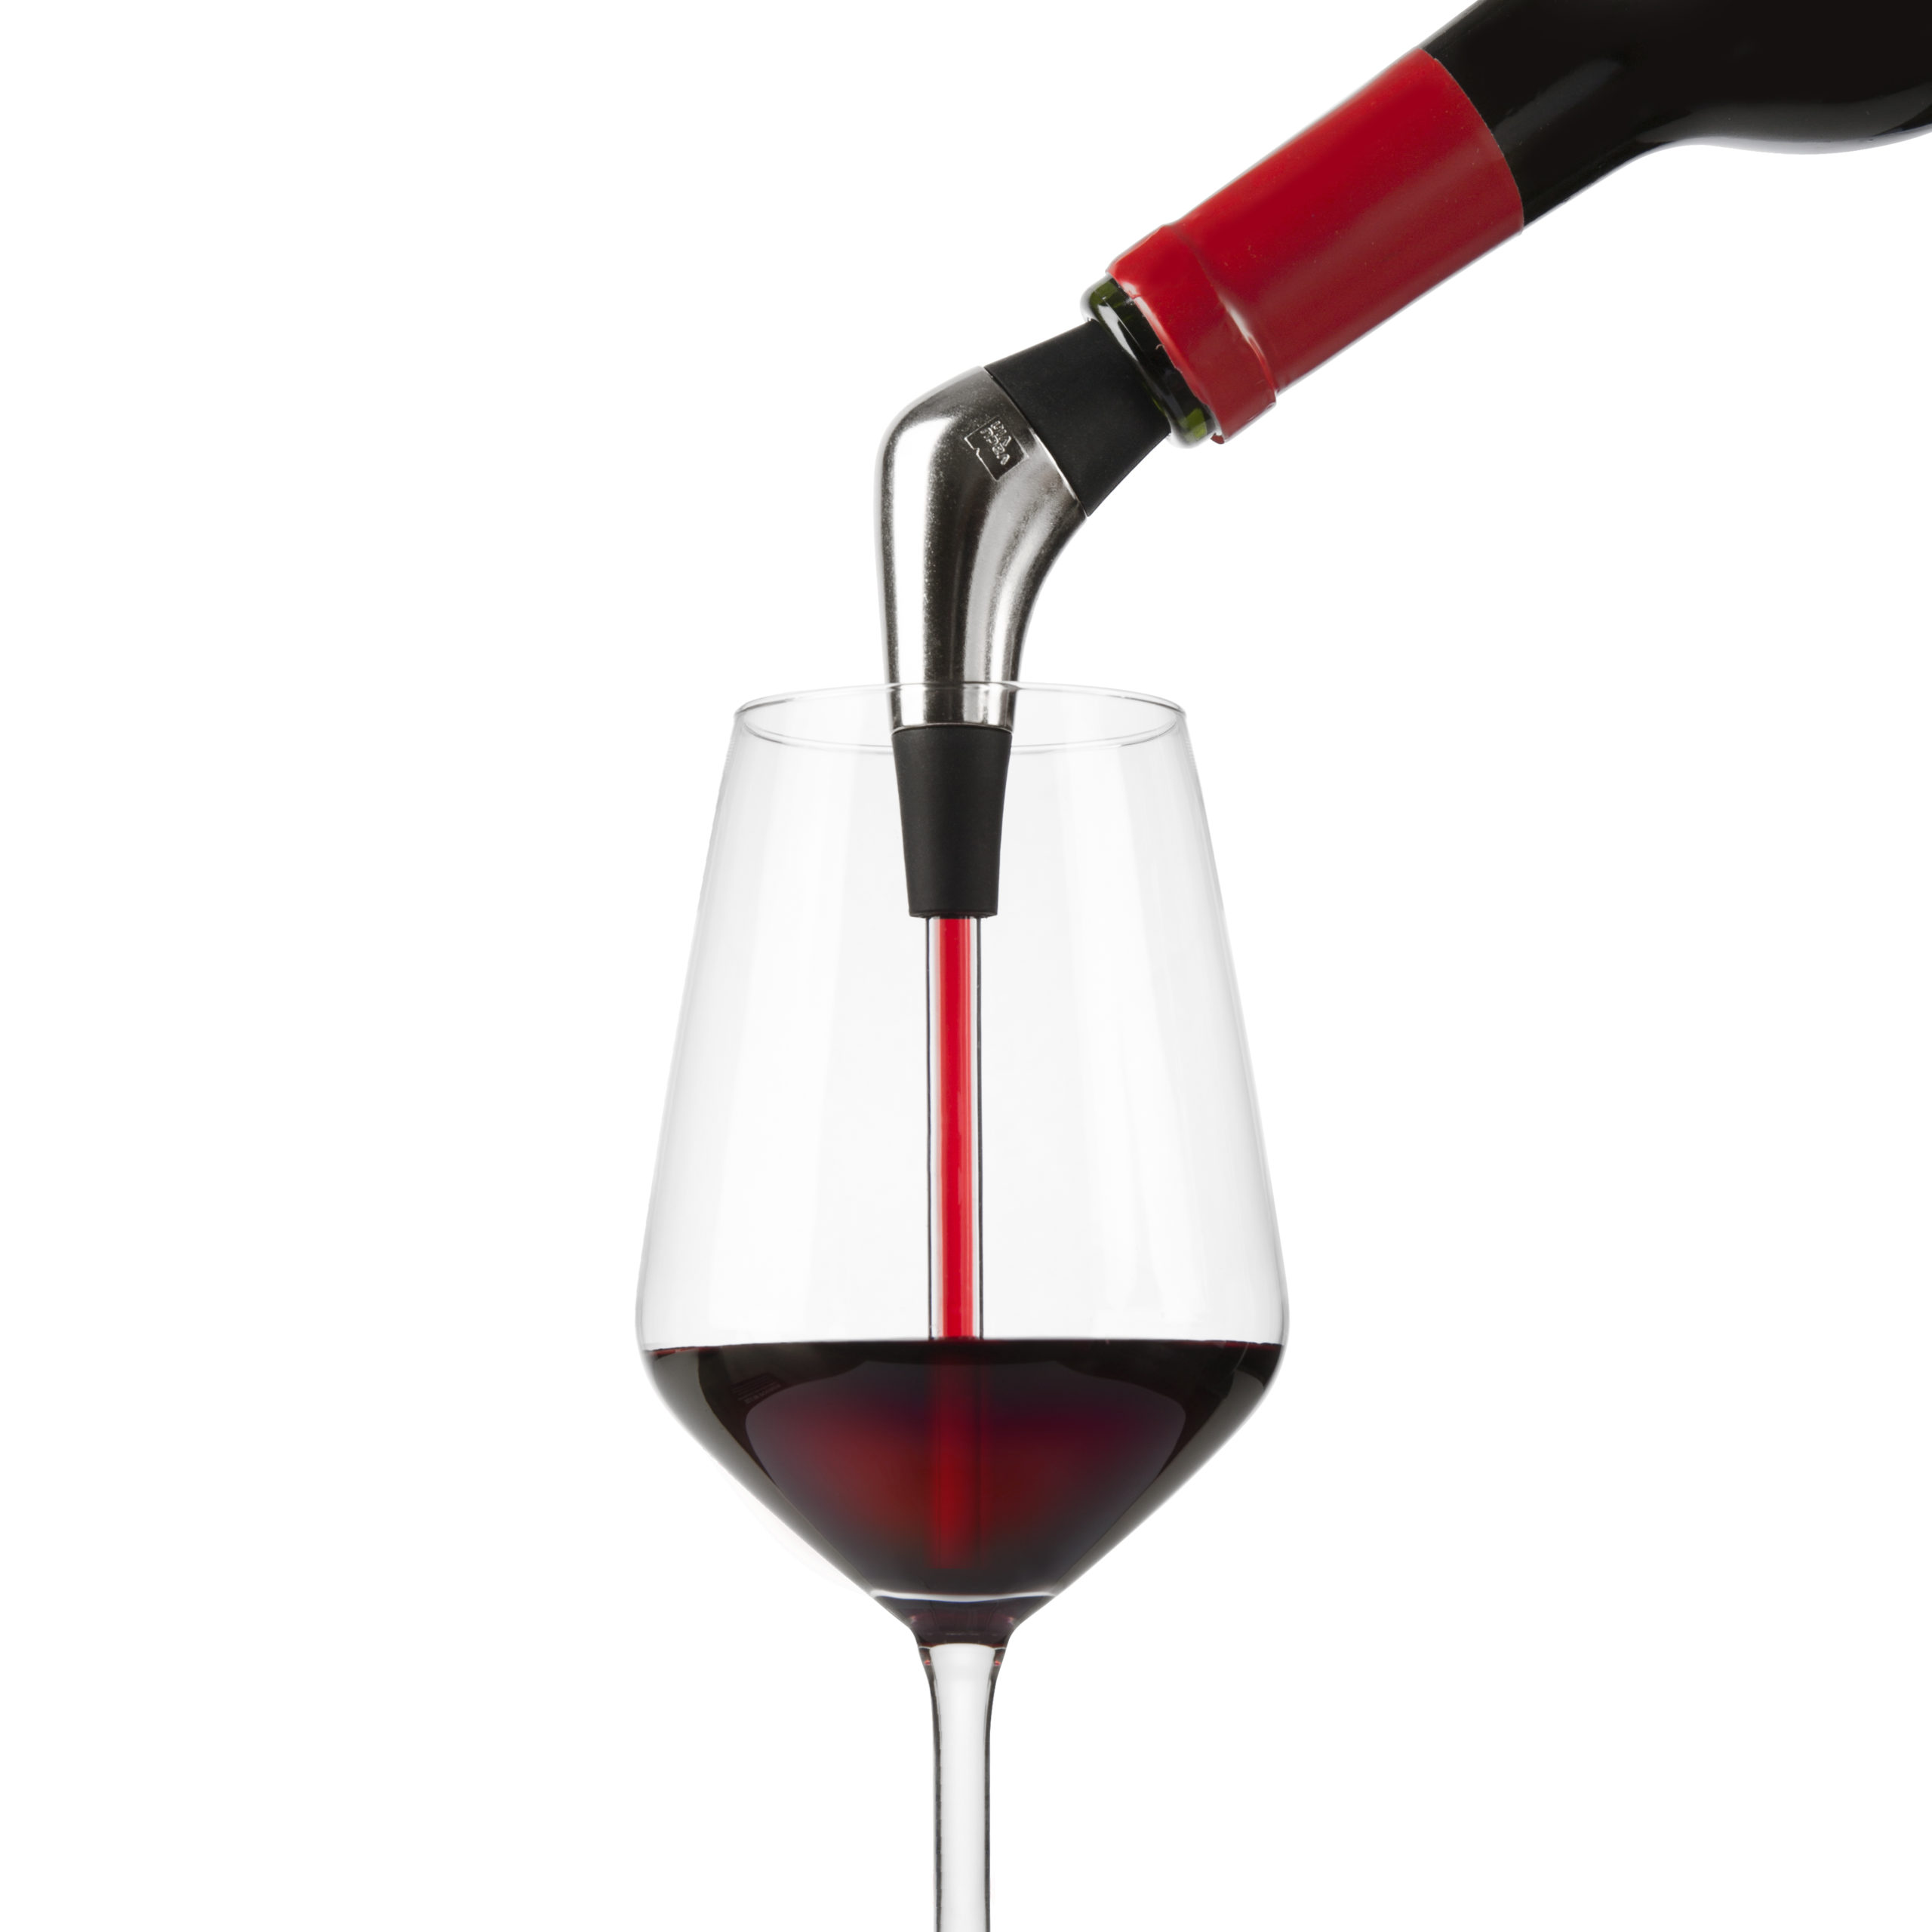 Siete productos Vacu Vin que cambiarán tu experiencia con el vino – Blog  Vinopremier